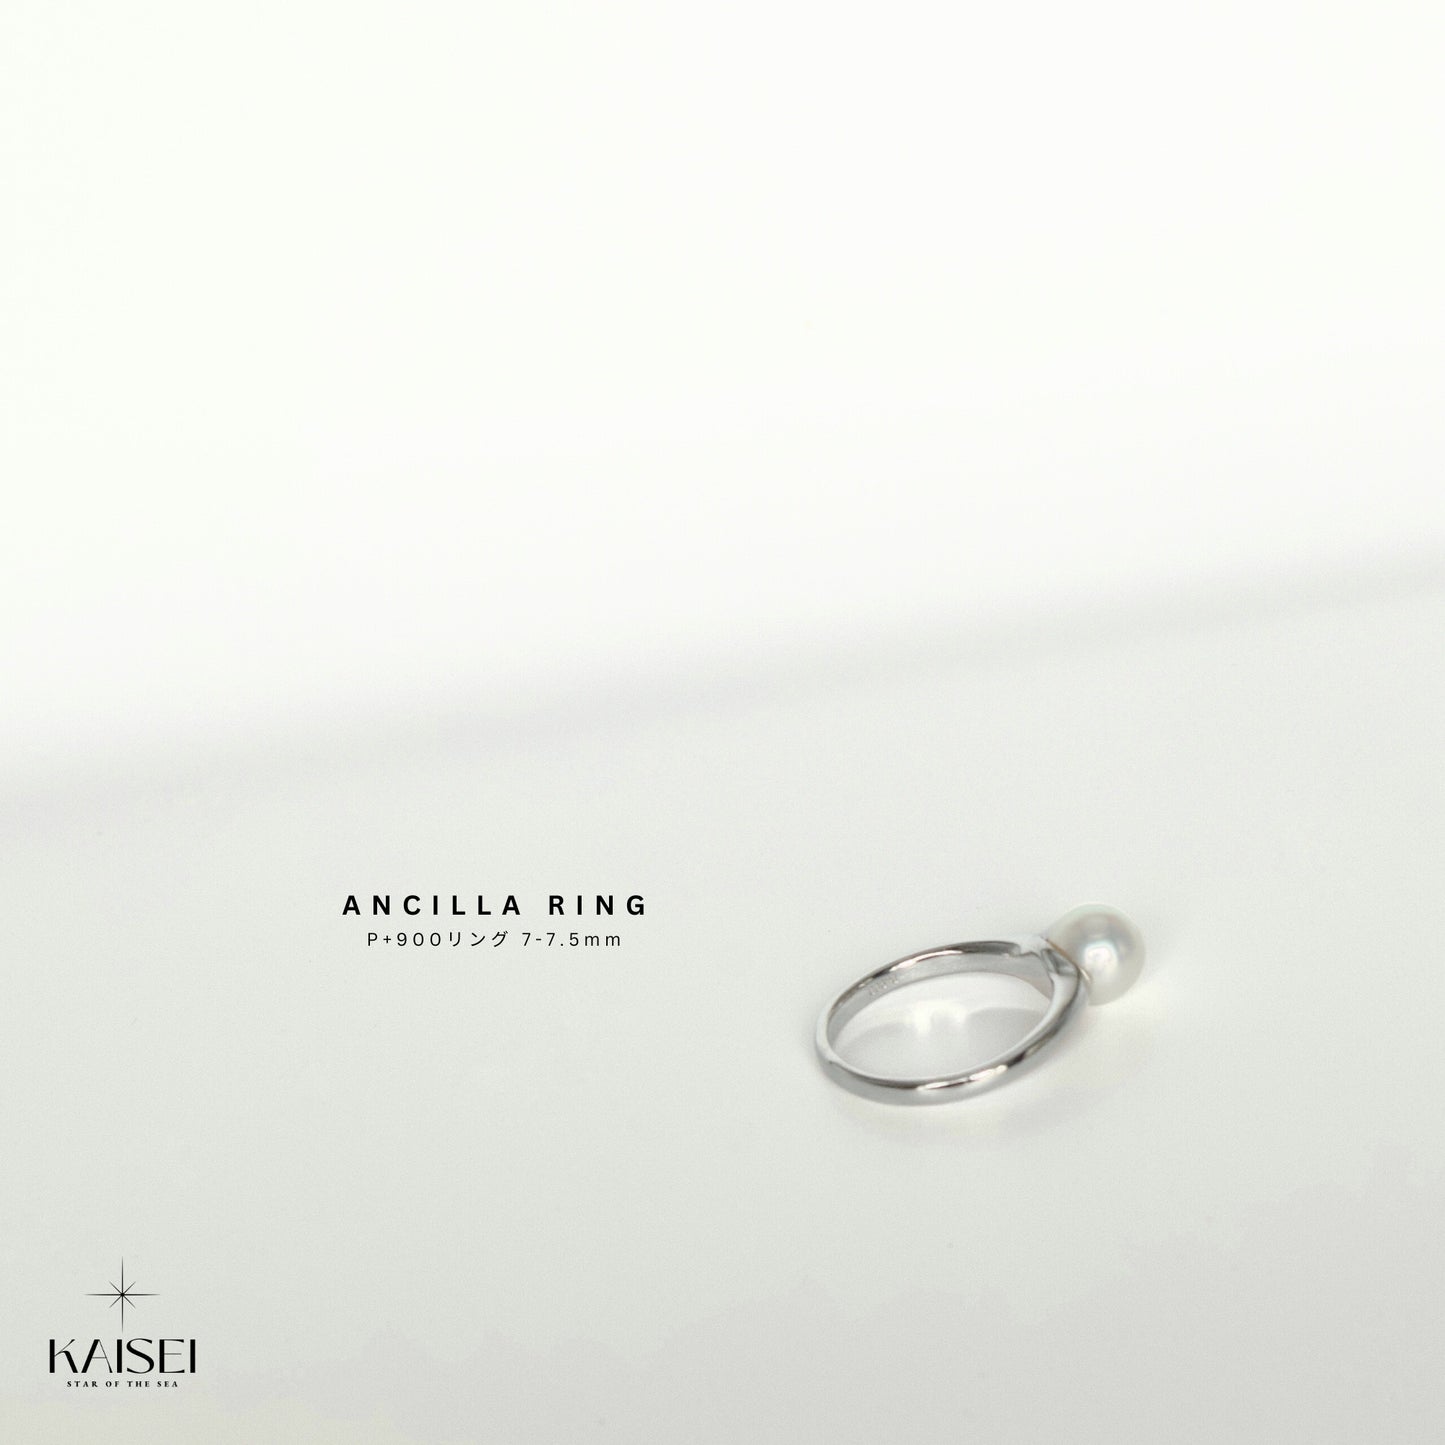 Kaisei Pearl - Ancilla Ring P+900 Japanese Akoya Pearl 7-7.5mm